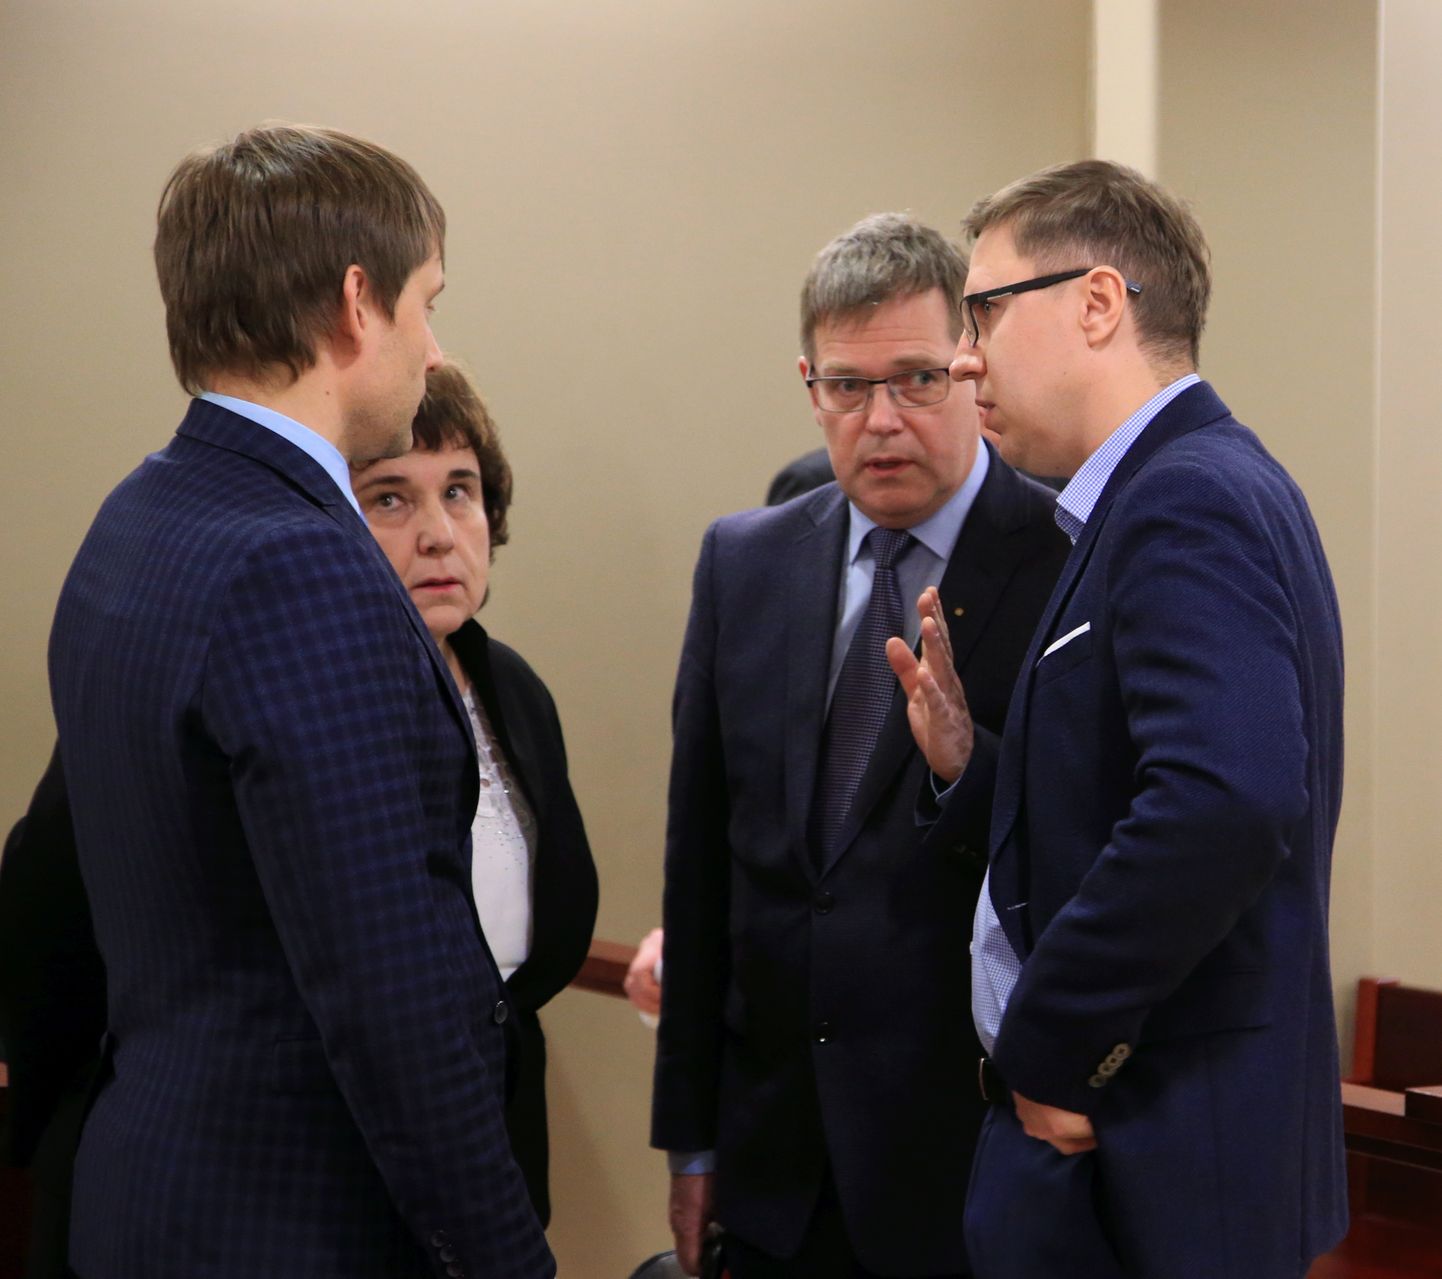 Kohtuotsuse kuulutamine mullu märtsis Peeter Saare, Leonid Dulubi ja Tartu Mill aktsiaseltsi süüdistuses.
Pildil Leonid Dulub kaitsjatega.